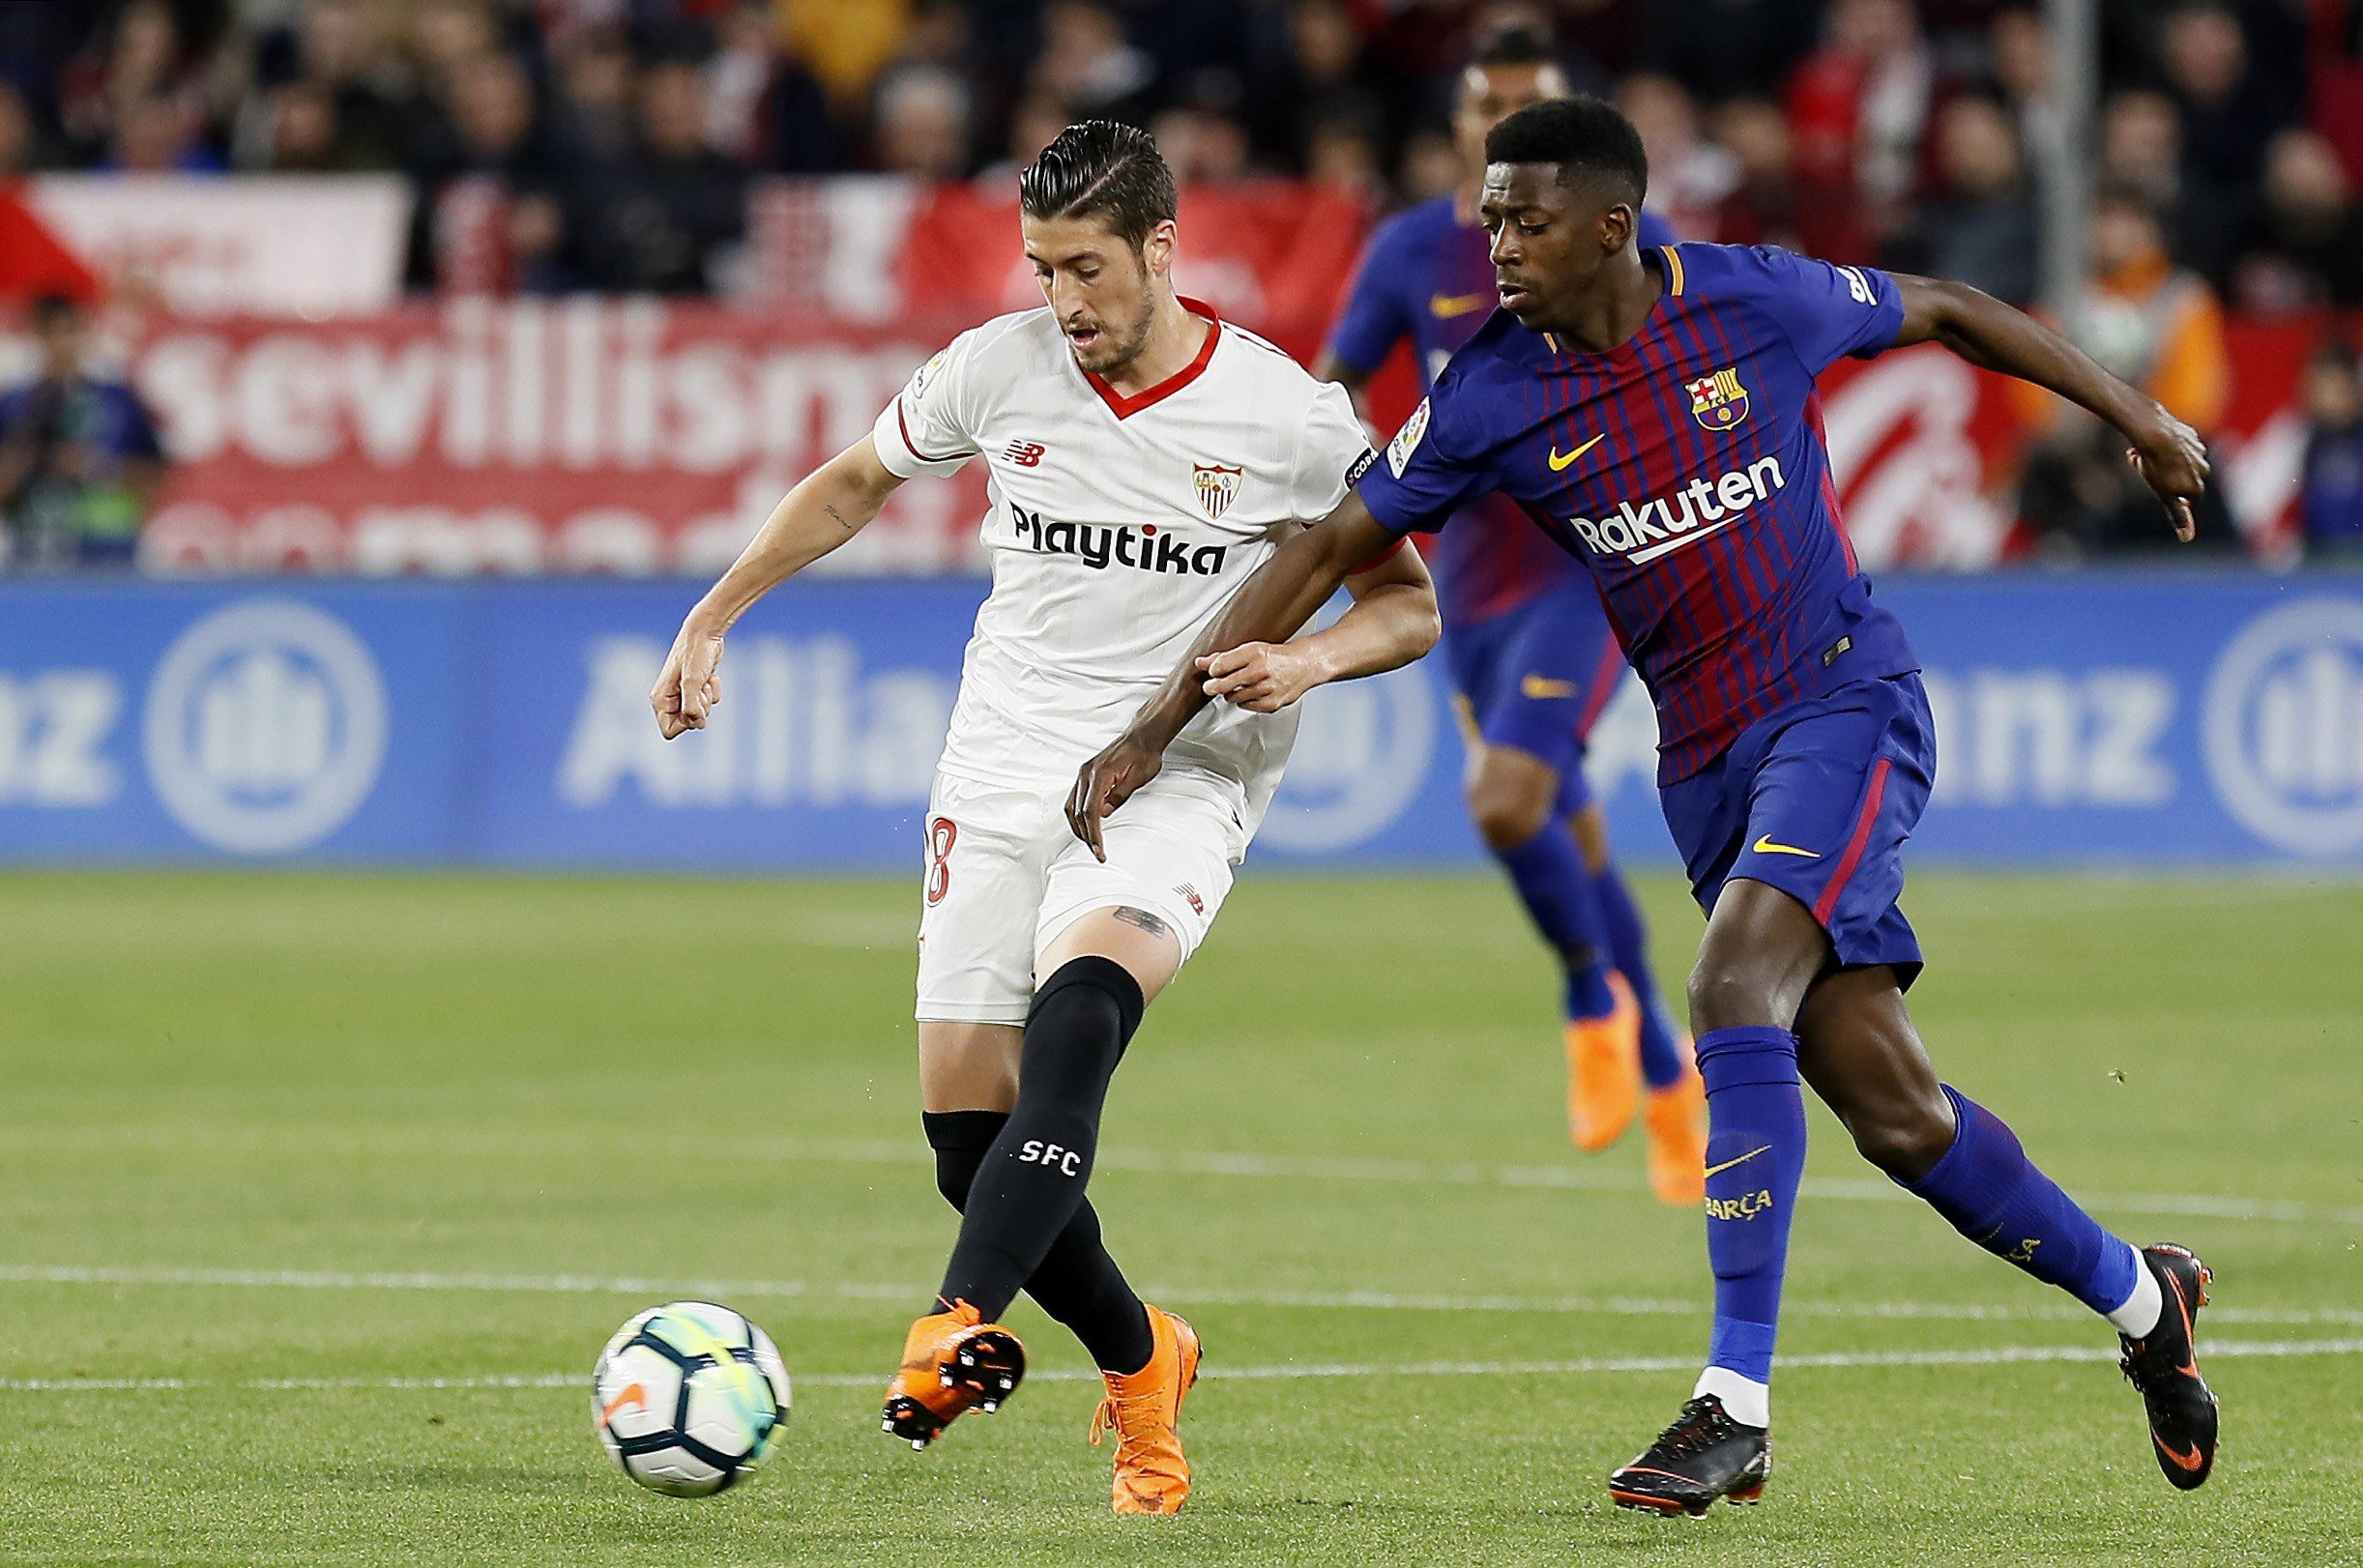 L'amenaçant missatge del Sevilla al Barça per l'afer Supercopa